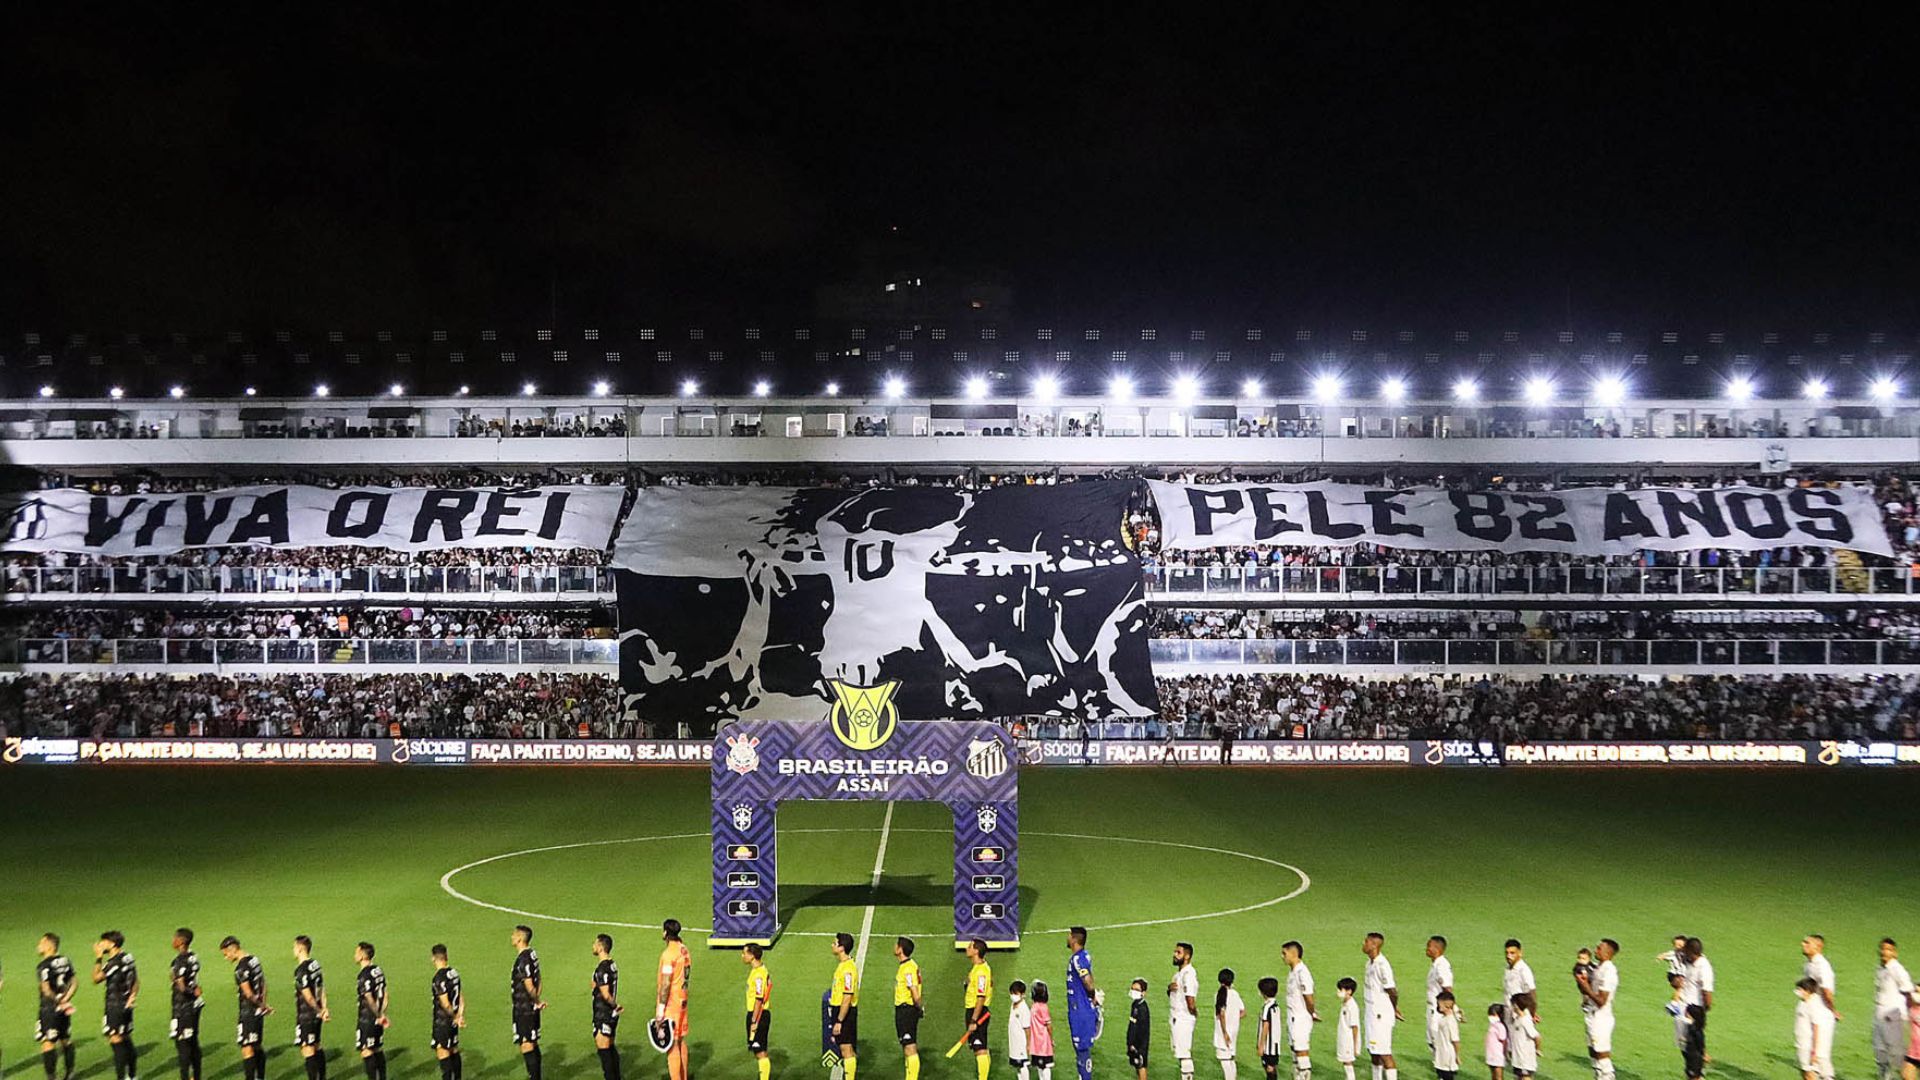 Mosaico da torcida do Santos em homenagem a Pelé